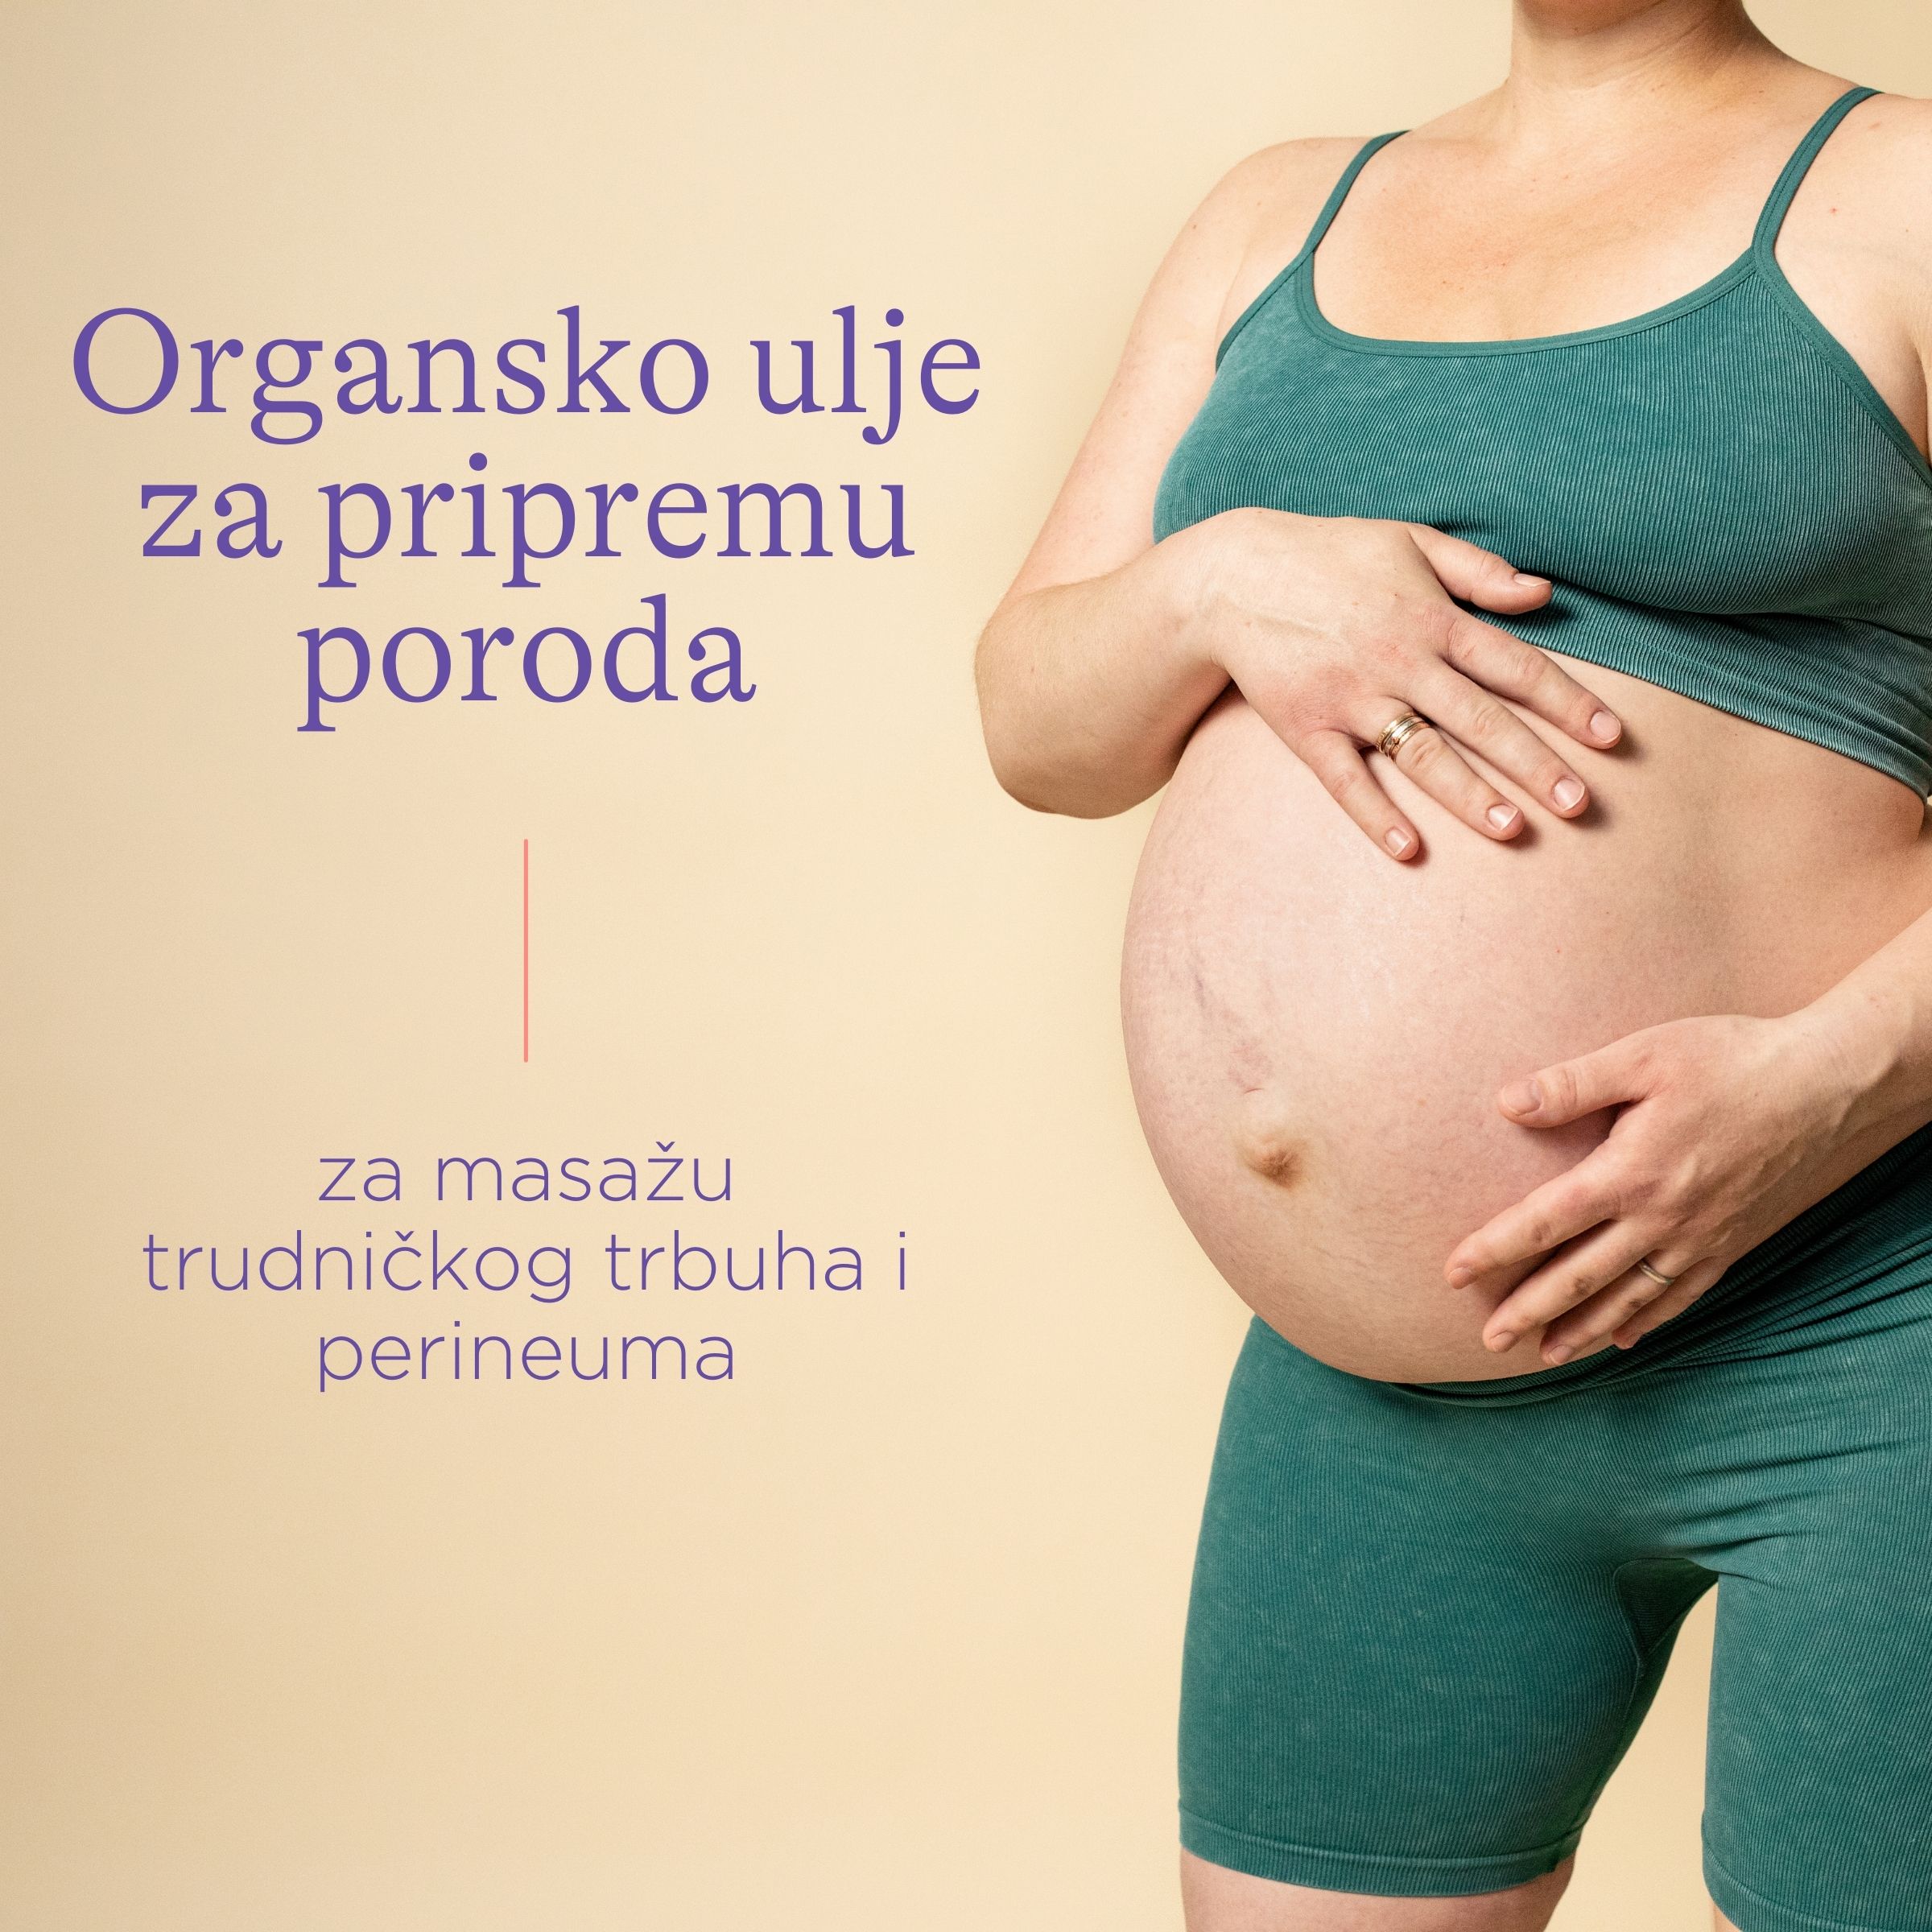 Organsko ulje za pripremu poroda